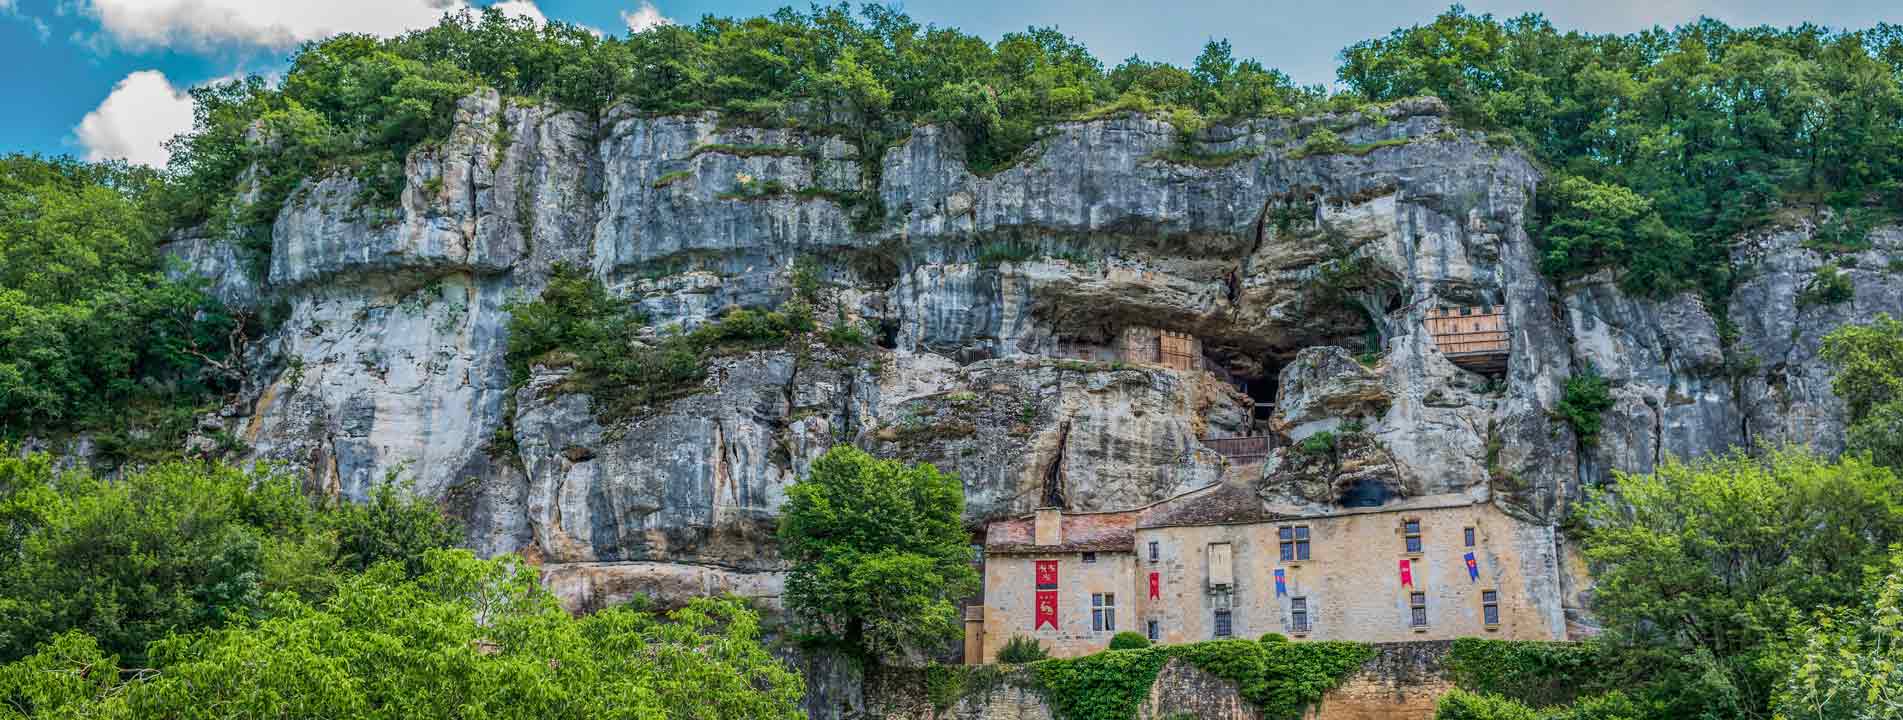 maison forte reignac monument historique dans la falaise dordogne